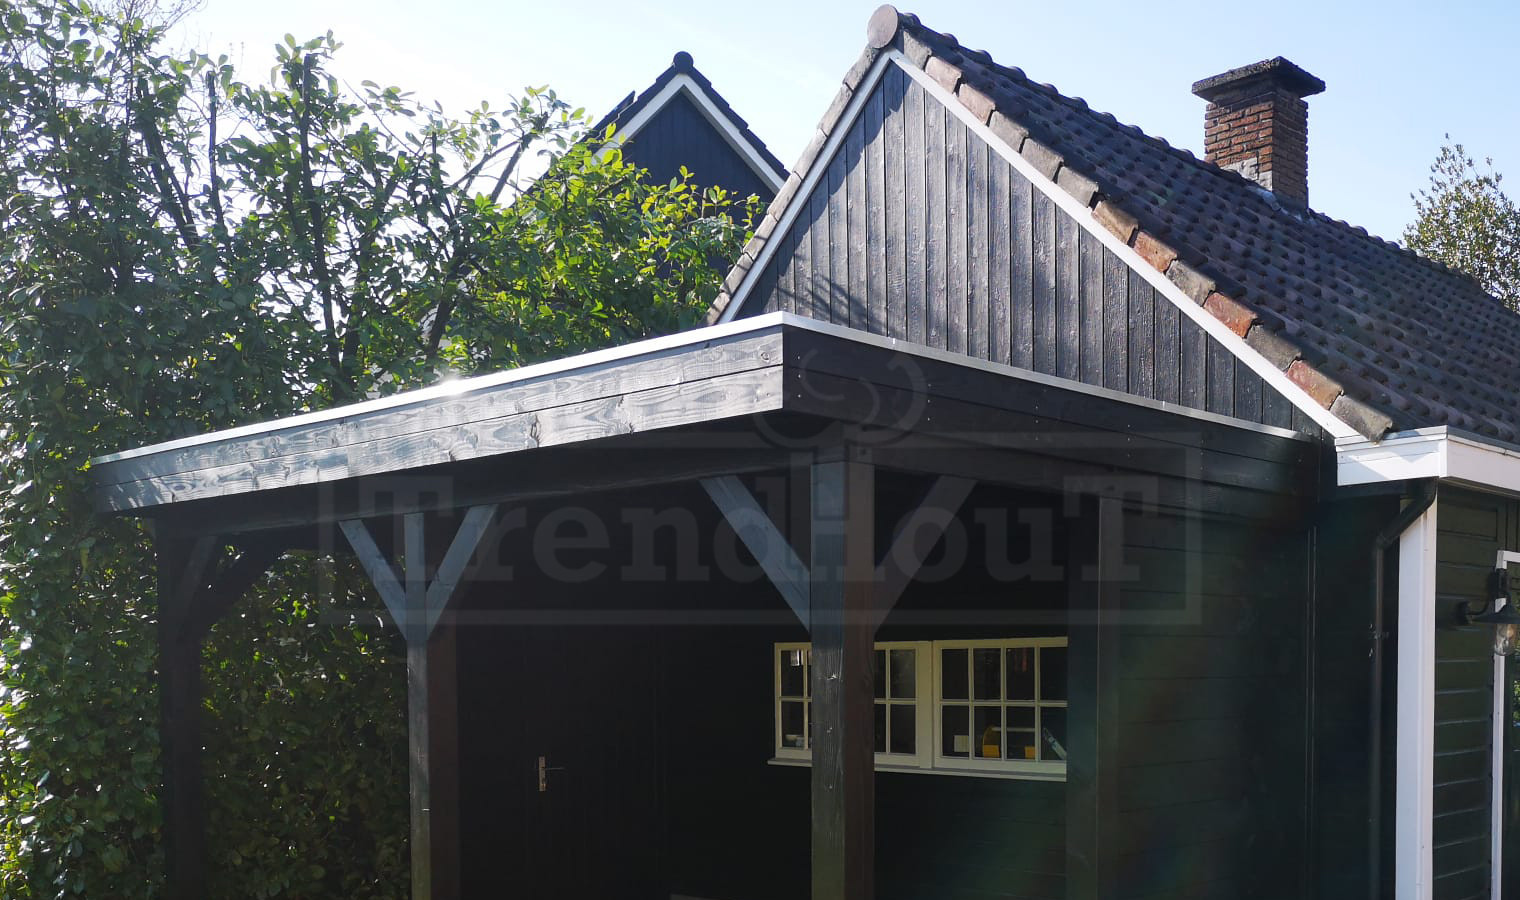 douglas-houten-overkapping-veranda-aan-huis-bouwpakket-ancona-usp-5